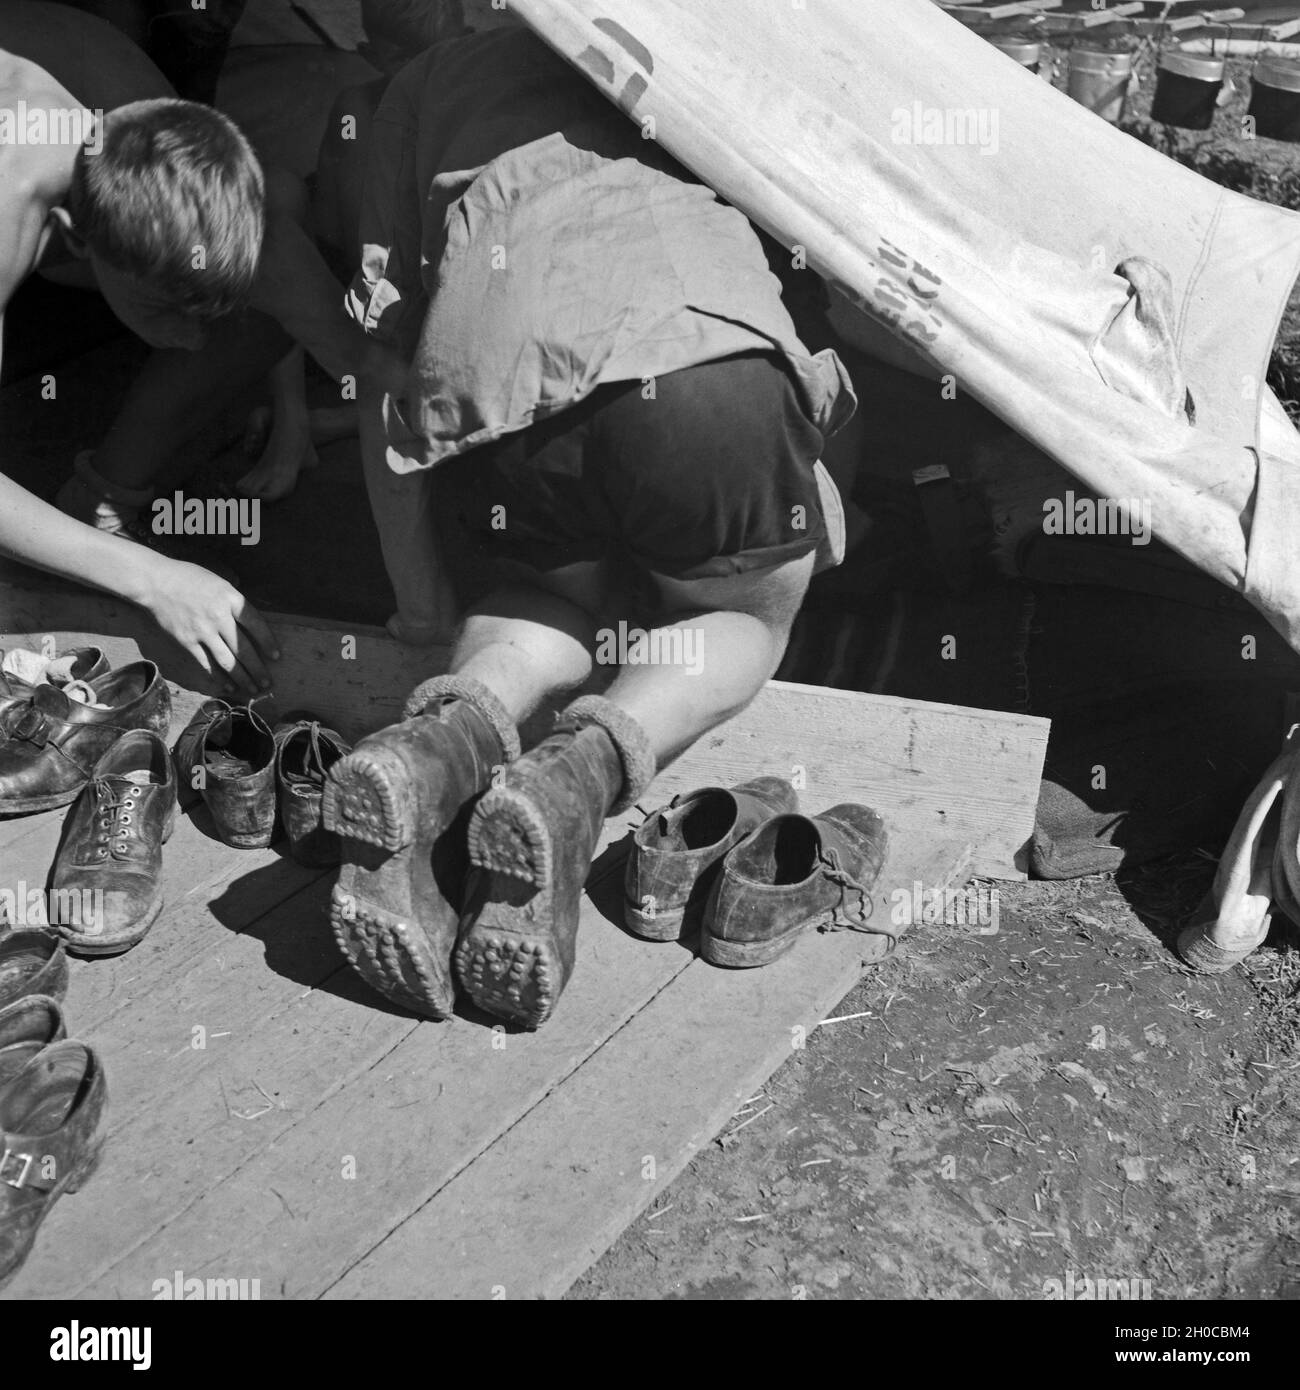 Im Lager der Hitlerjugend-Kompanie aus Franken im Zelt, wo die Schuhe gelagert werden, Österreich 1930er Jahre. At the Hitler youth camp: tent where shoes are stored, Austria 1930s. Stock Photo